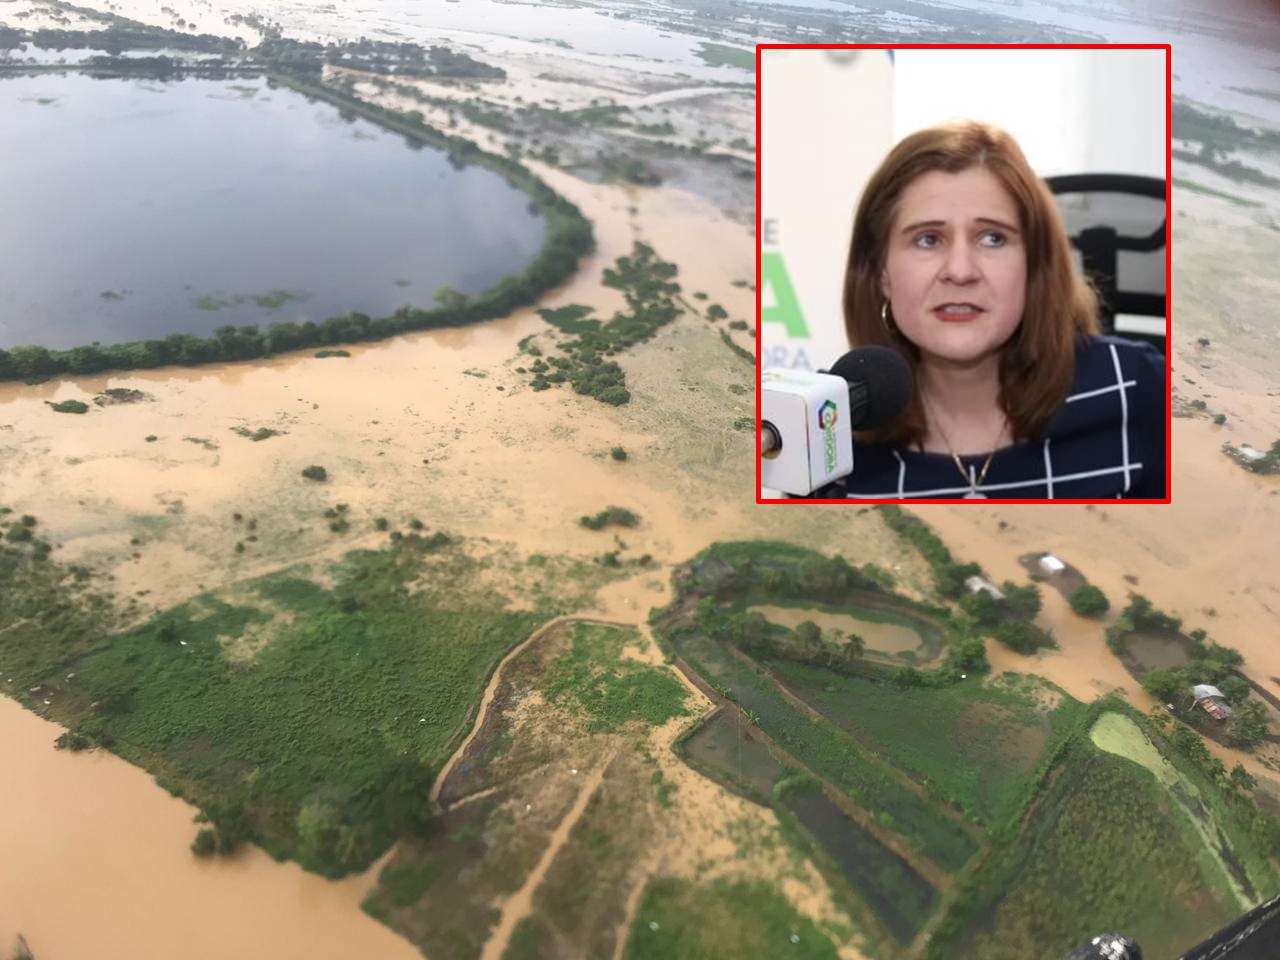 ¿Y las ayudas? Gobernadora de Córdoba “pasea” en helicóptero por zona de inundaciones y no hace contacto con damnificados